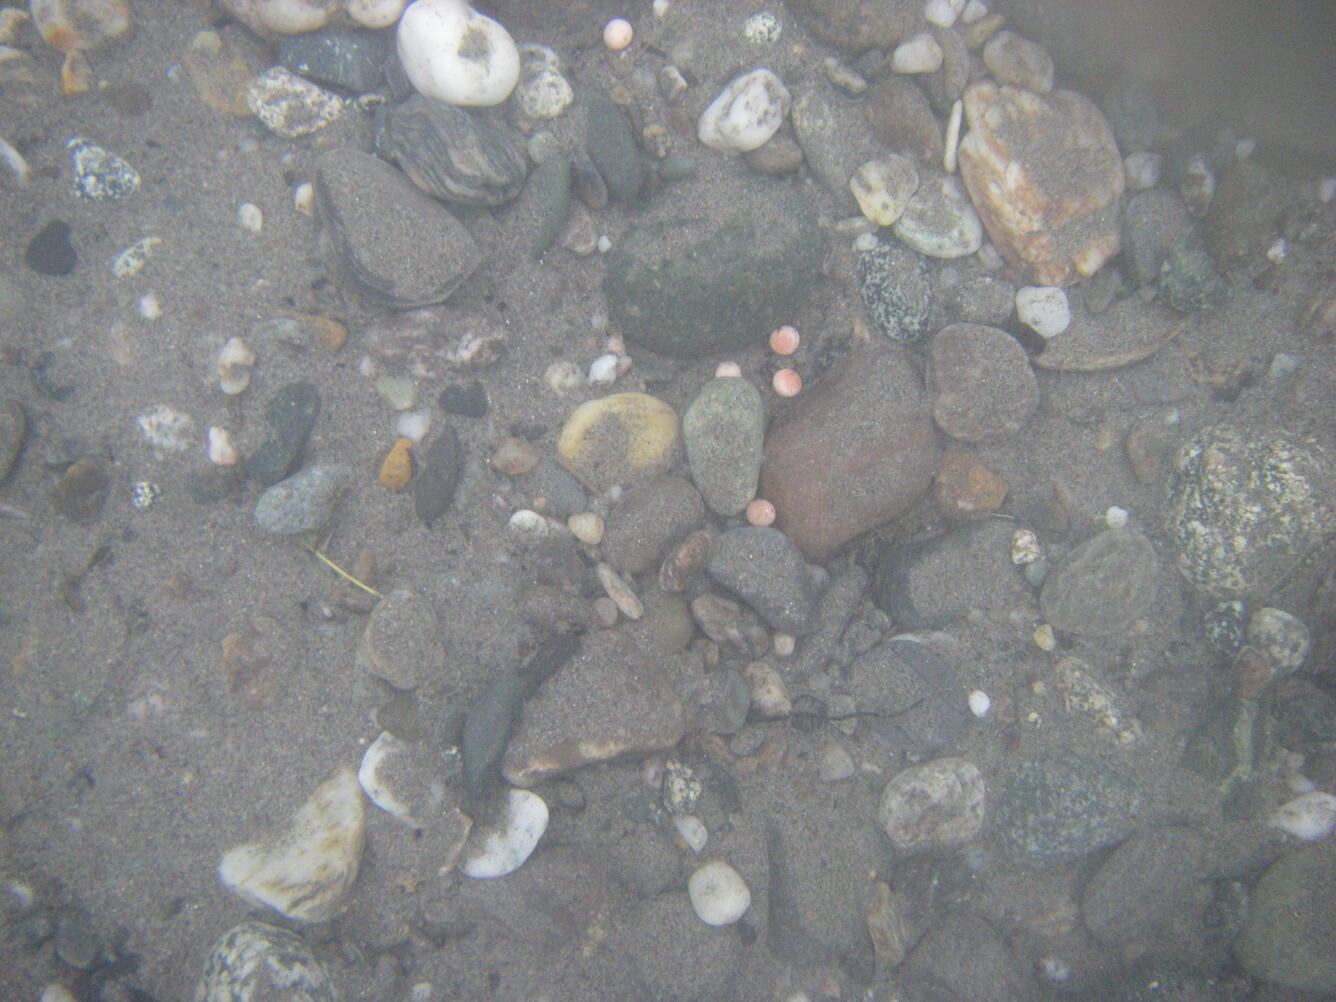 Salmon eggs in the gravel of the Tanana River in November 2008